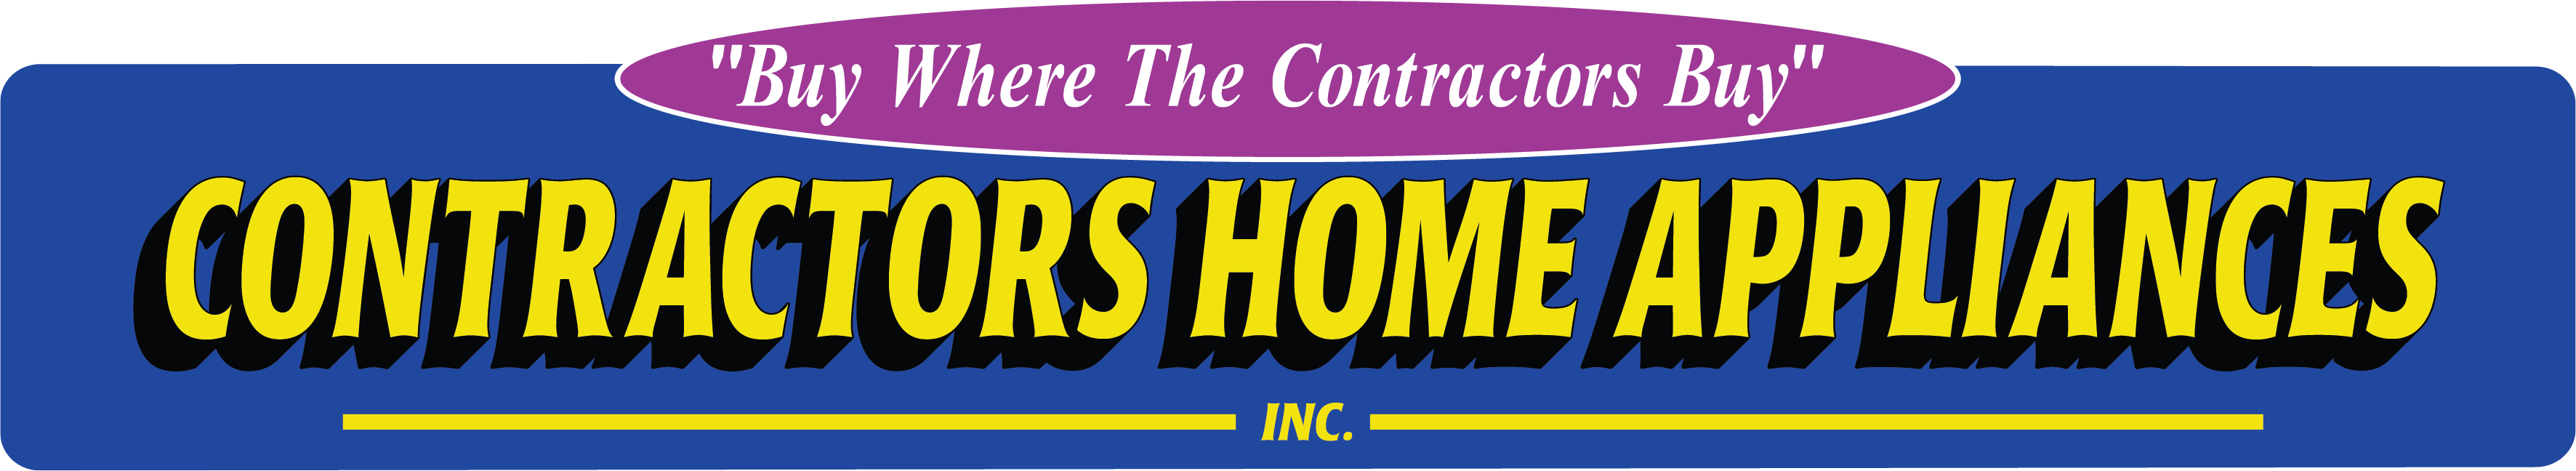 Contractors Home Appliances